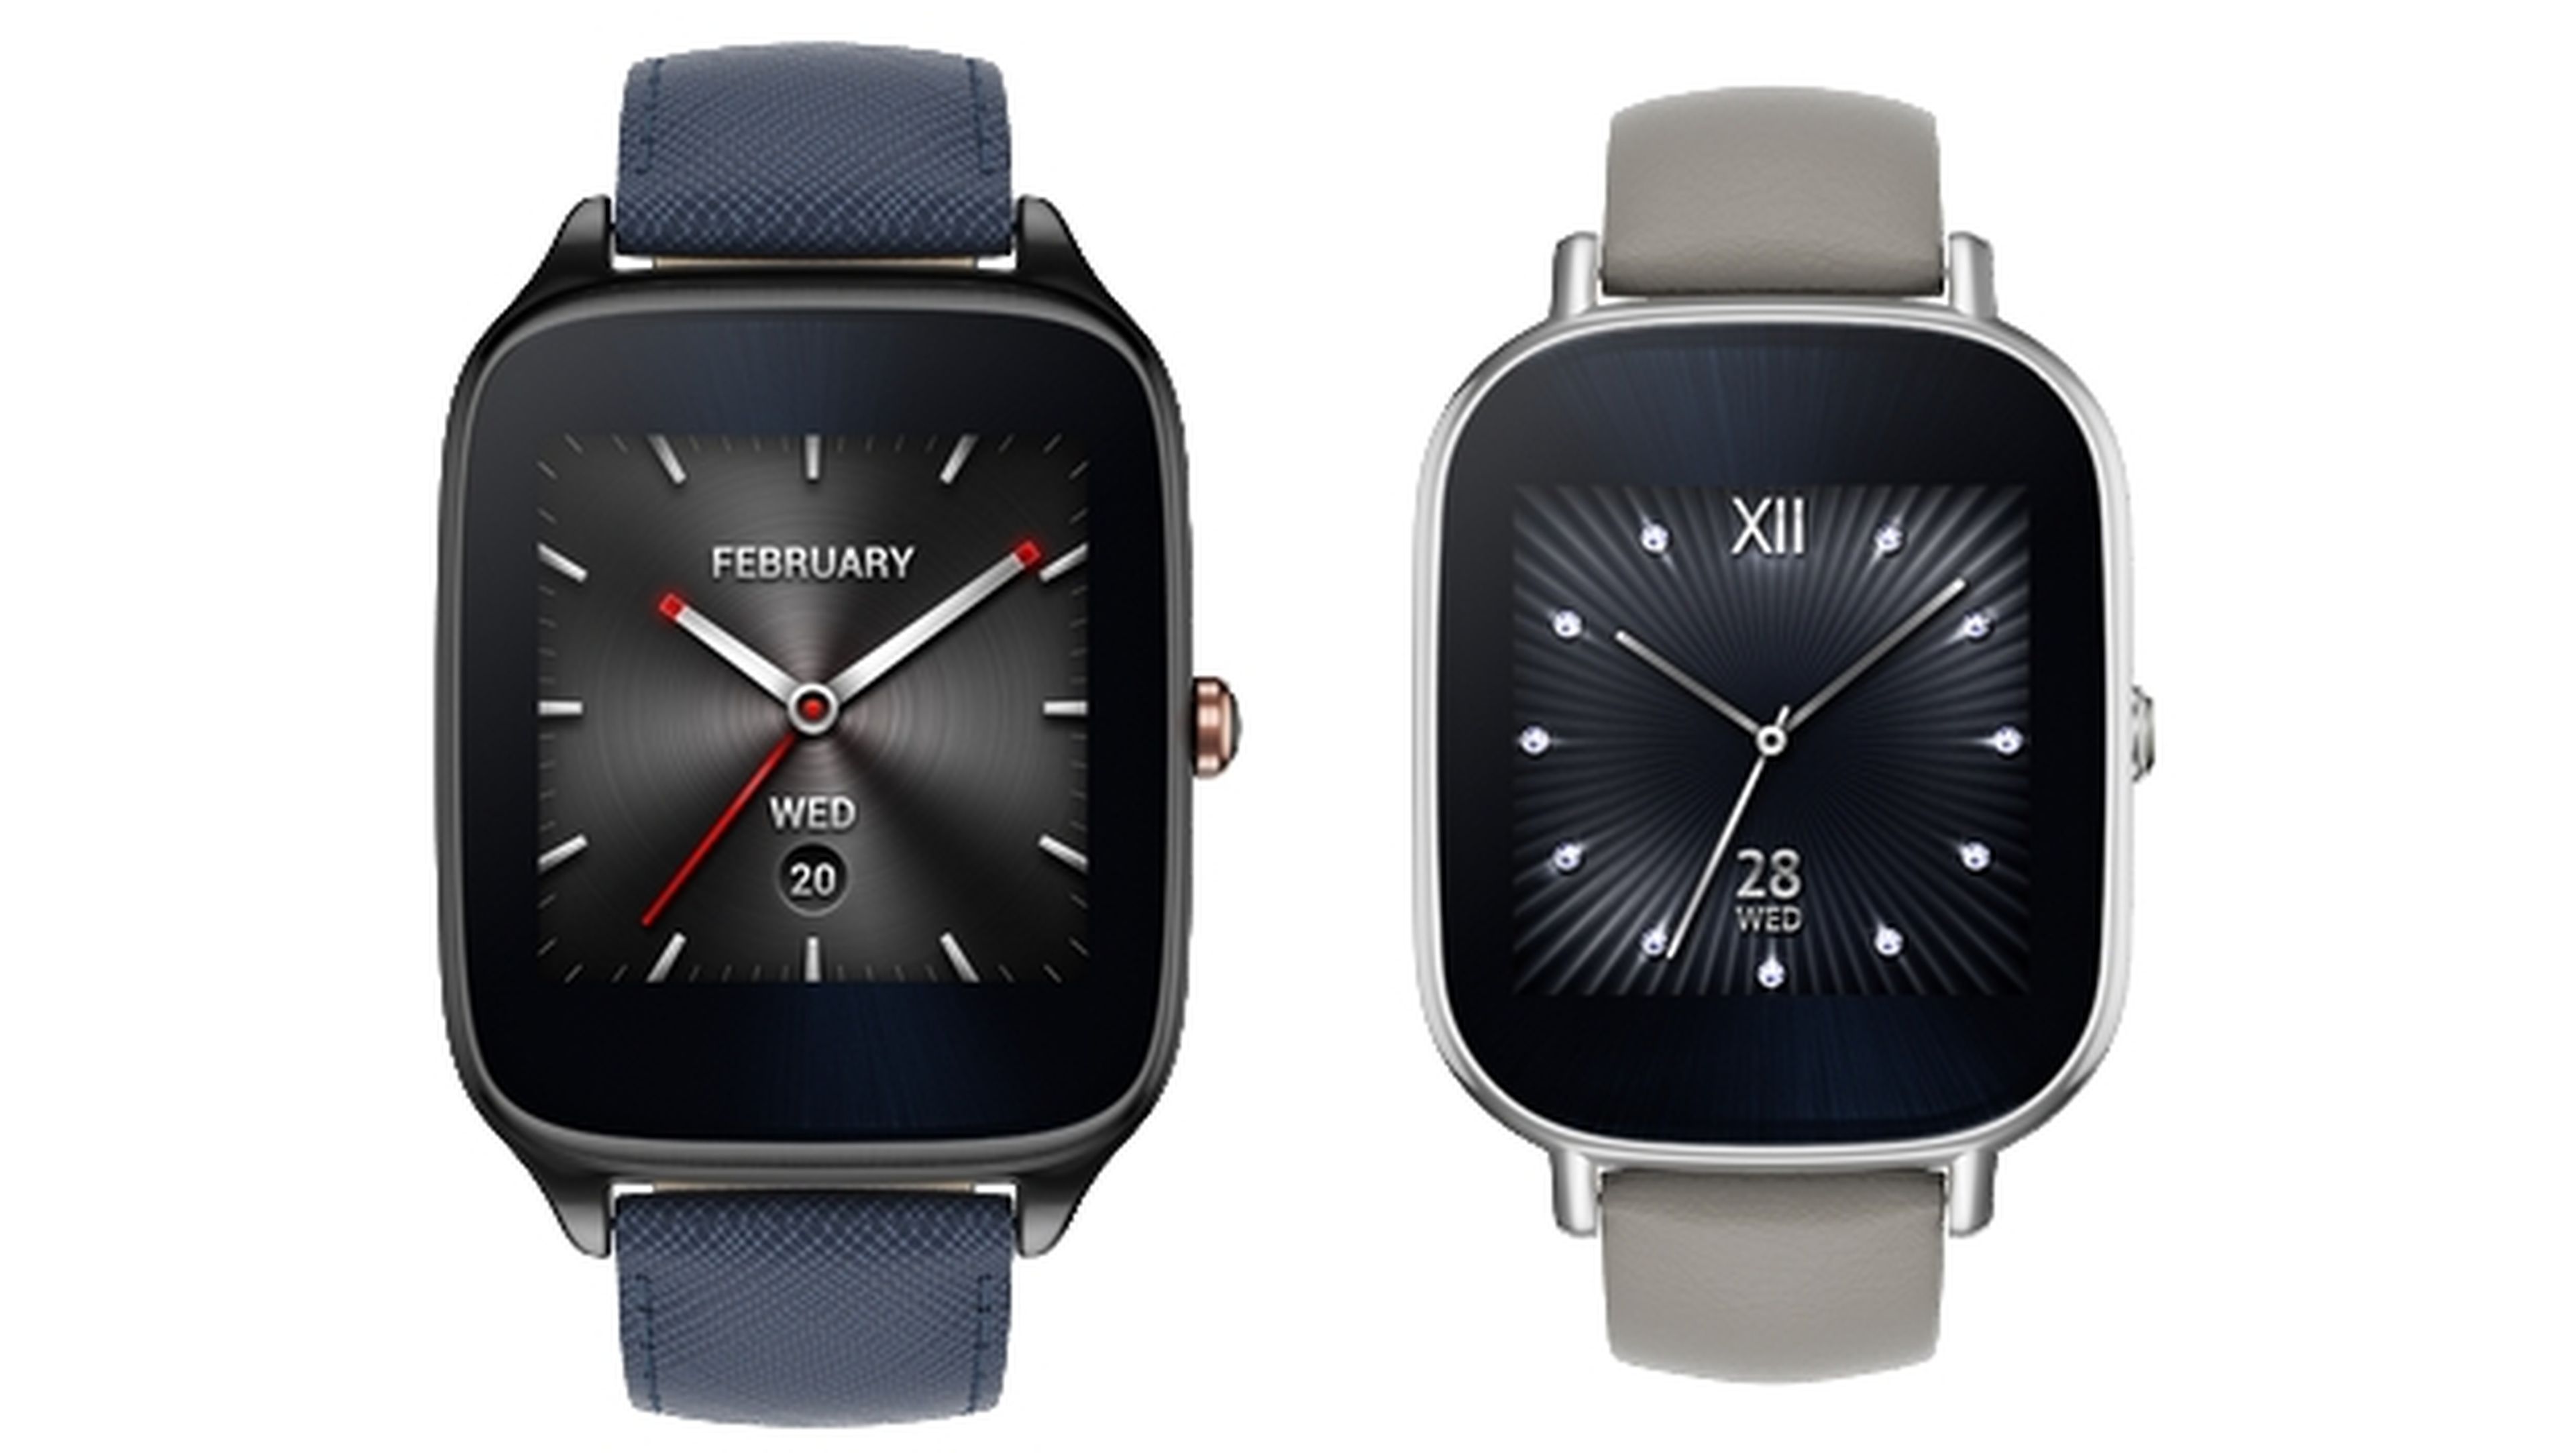 El smartwatch Asus ZenWatch 2, elegante y asequible, presentado en IFA 2015.